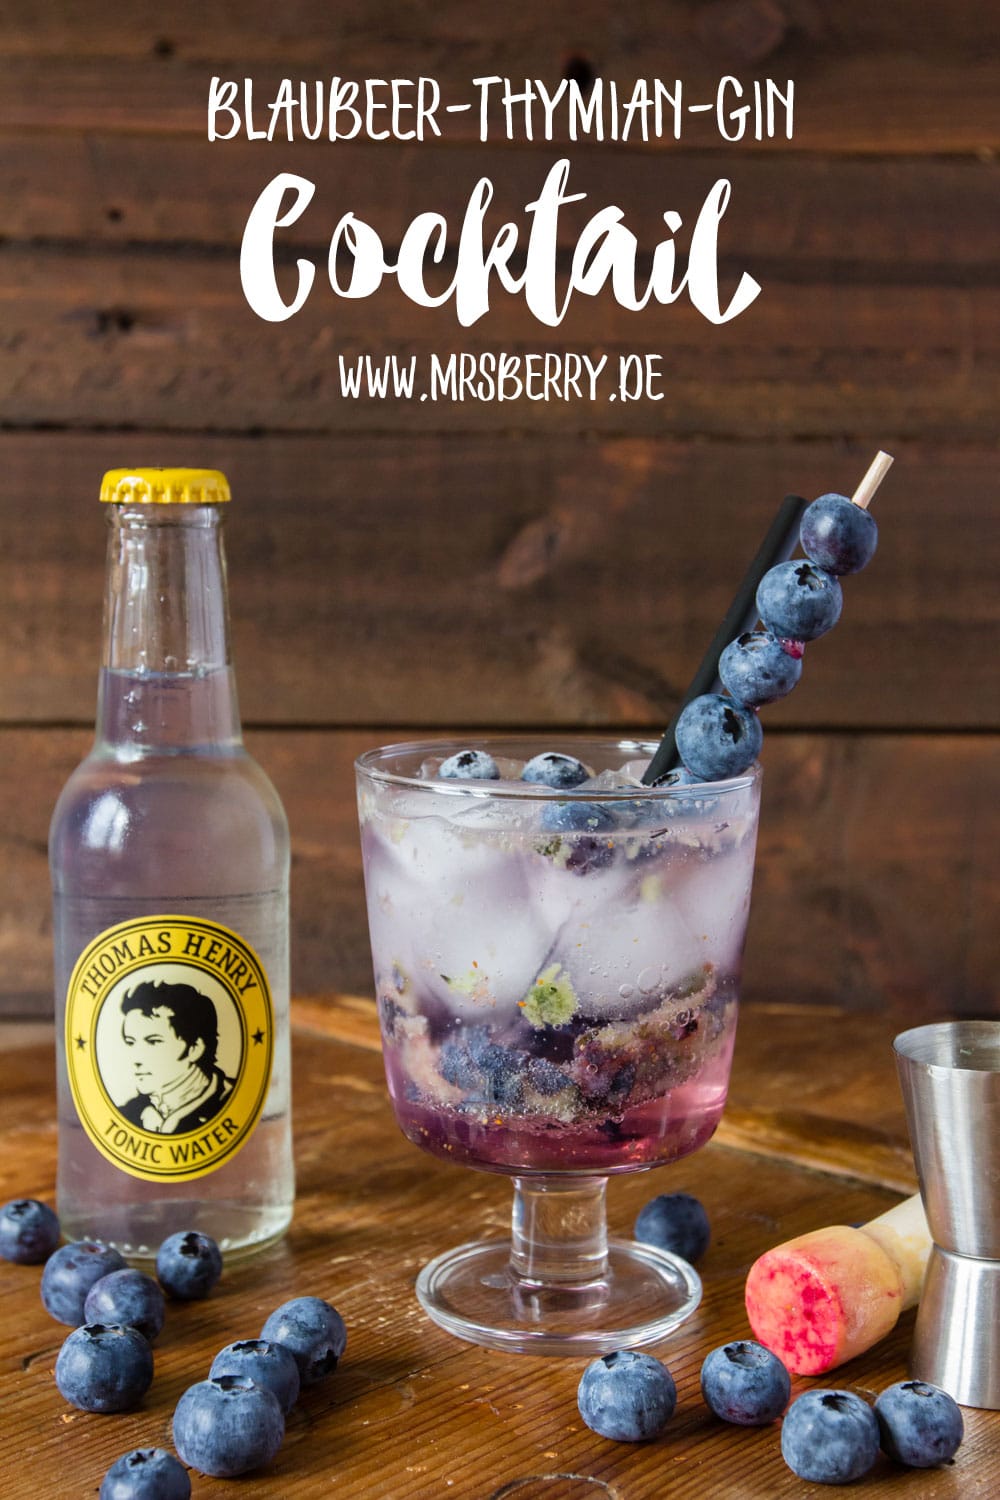 Muttertagsgeschenke: Gin-Cocktail-Party mit Rezept für Blaubeer-Thymian-Gin Cocktail